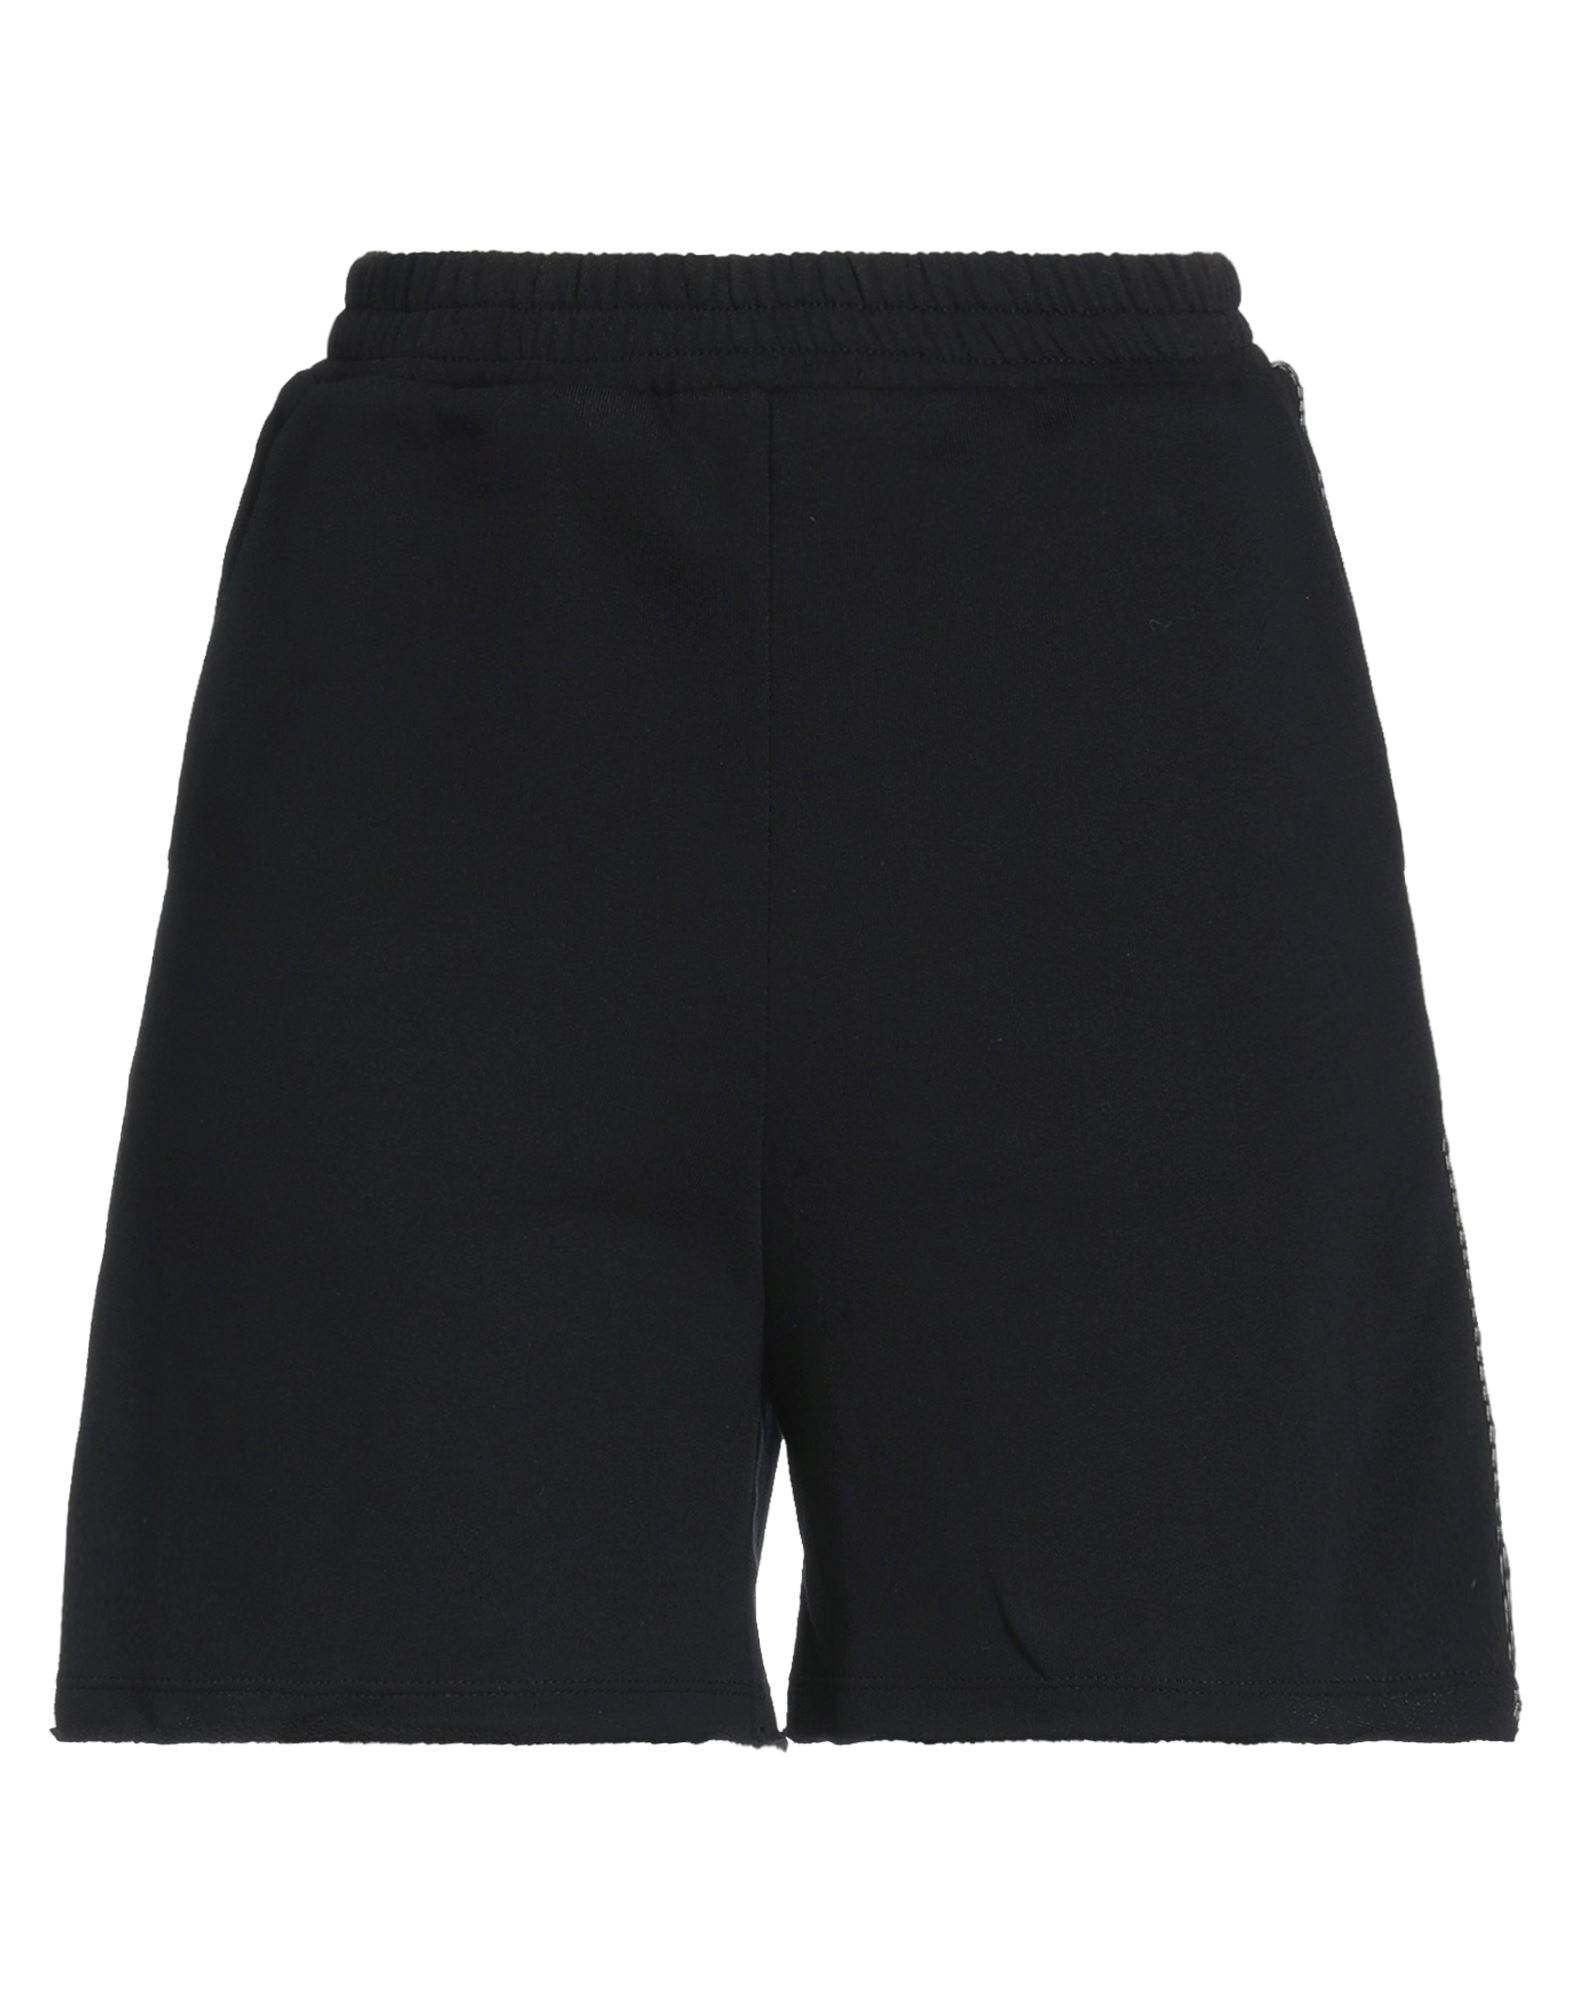 Jijil Woman Shorts & Bermuda Shorts Black Size 8 Cotton